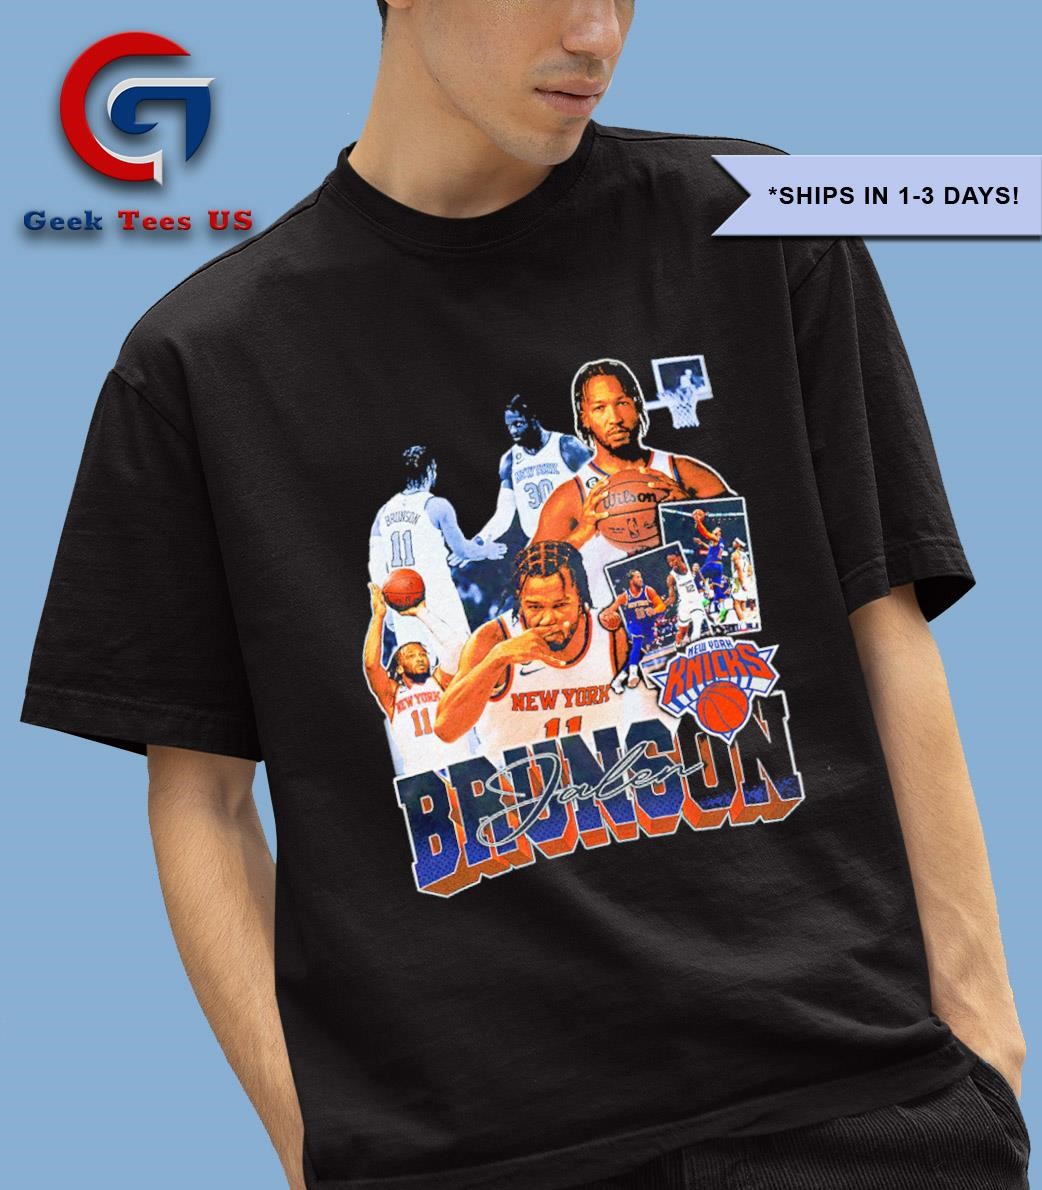 Jalen Brunson 11 New York Knicks basketball style 90s shirt
geekteesus.com/product/jalen-…
#shirt #trending #gift #geekteesus #geekshirt #GEEKS #JalenBrunson #Brunson #NewYorkKnicks #Knicks #basketball #IVO